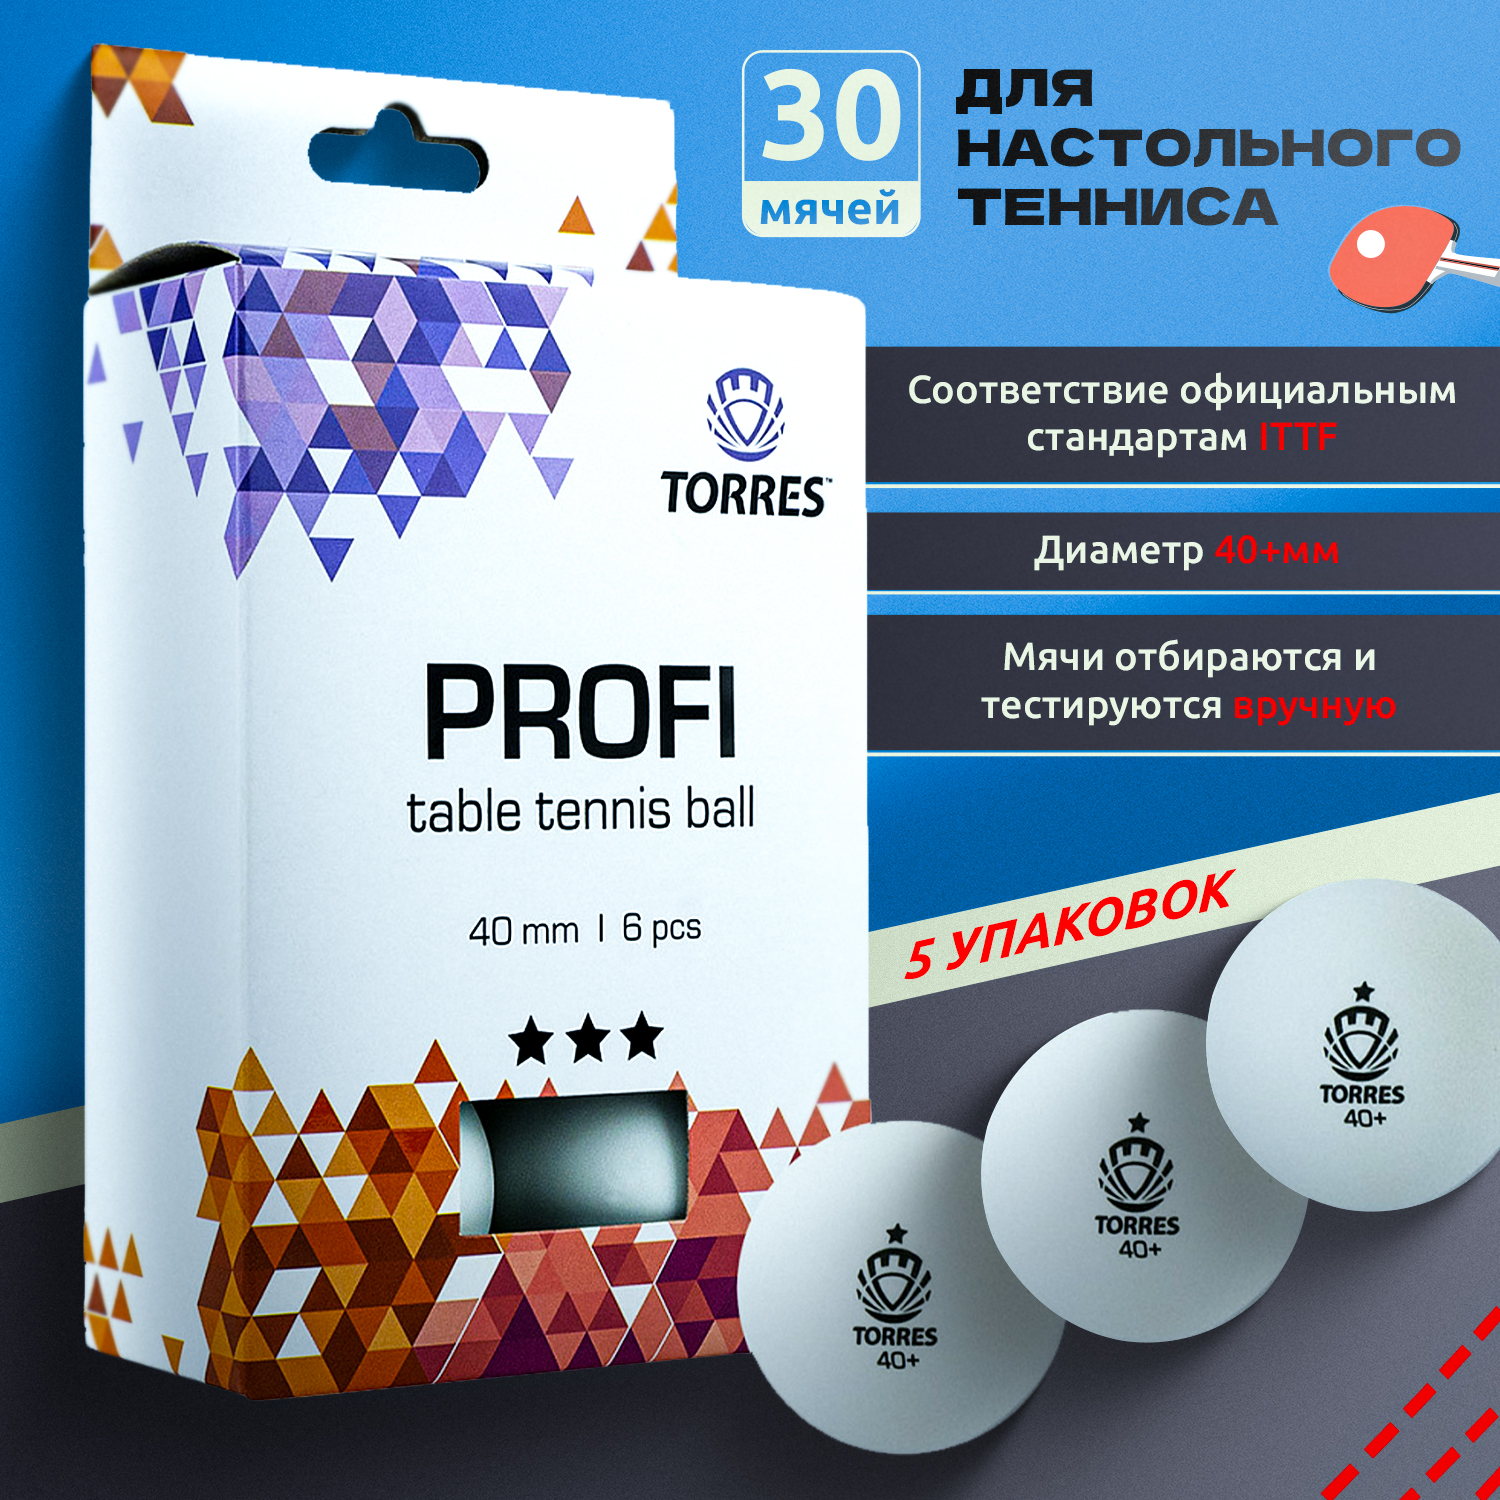 Мячи для настольного тенниса Torres Profi TT21012-30, набор из 30 штук